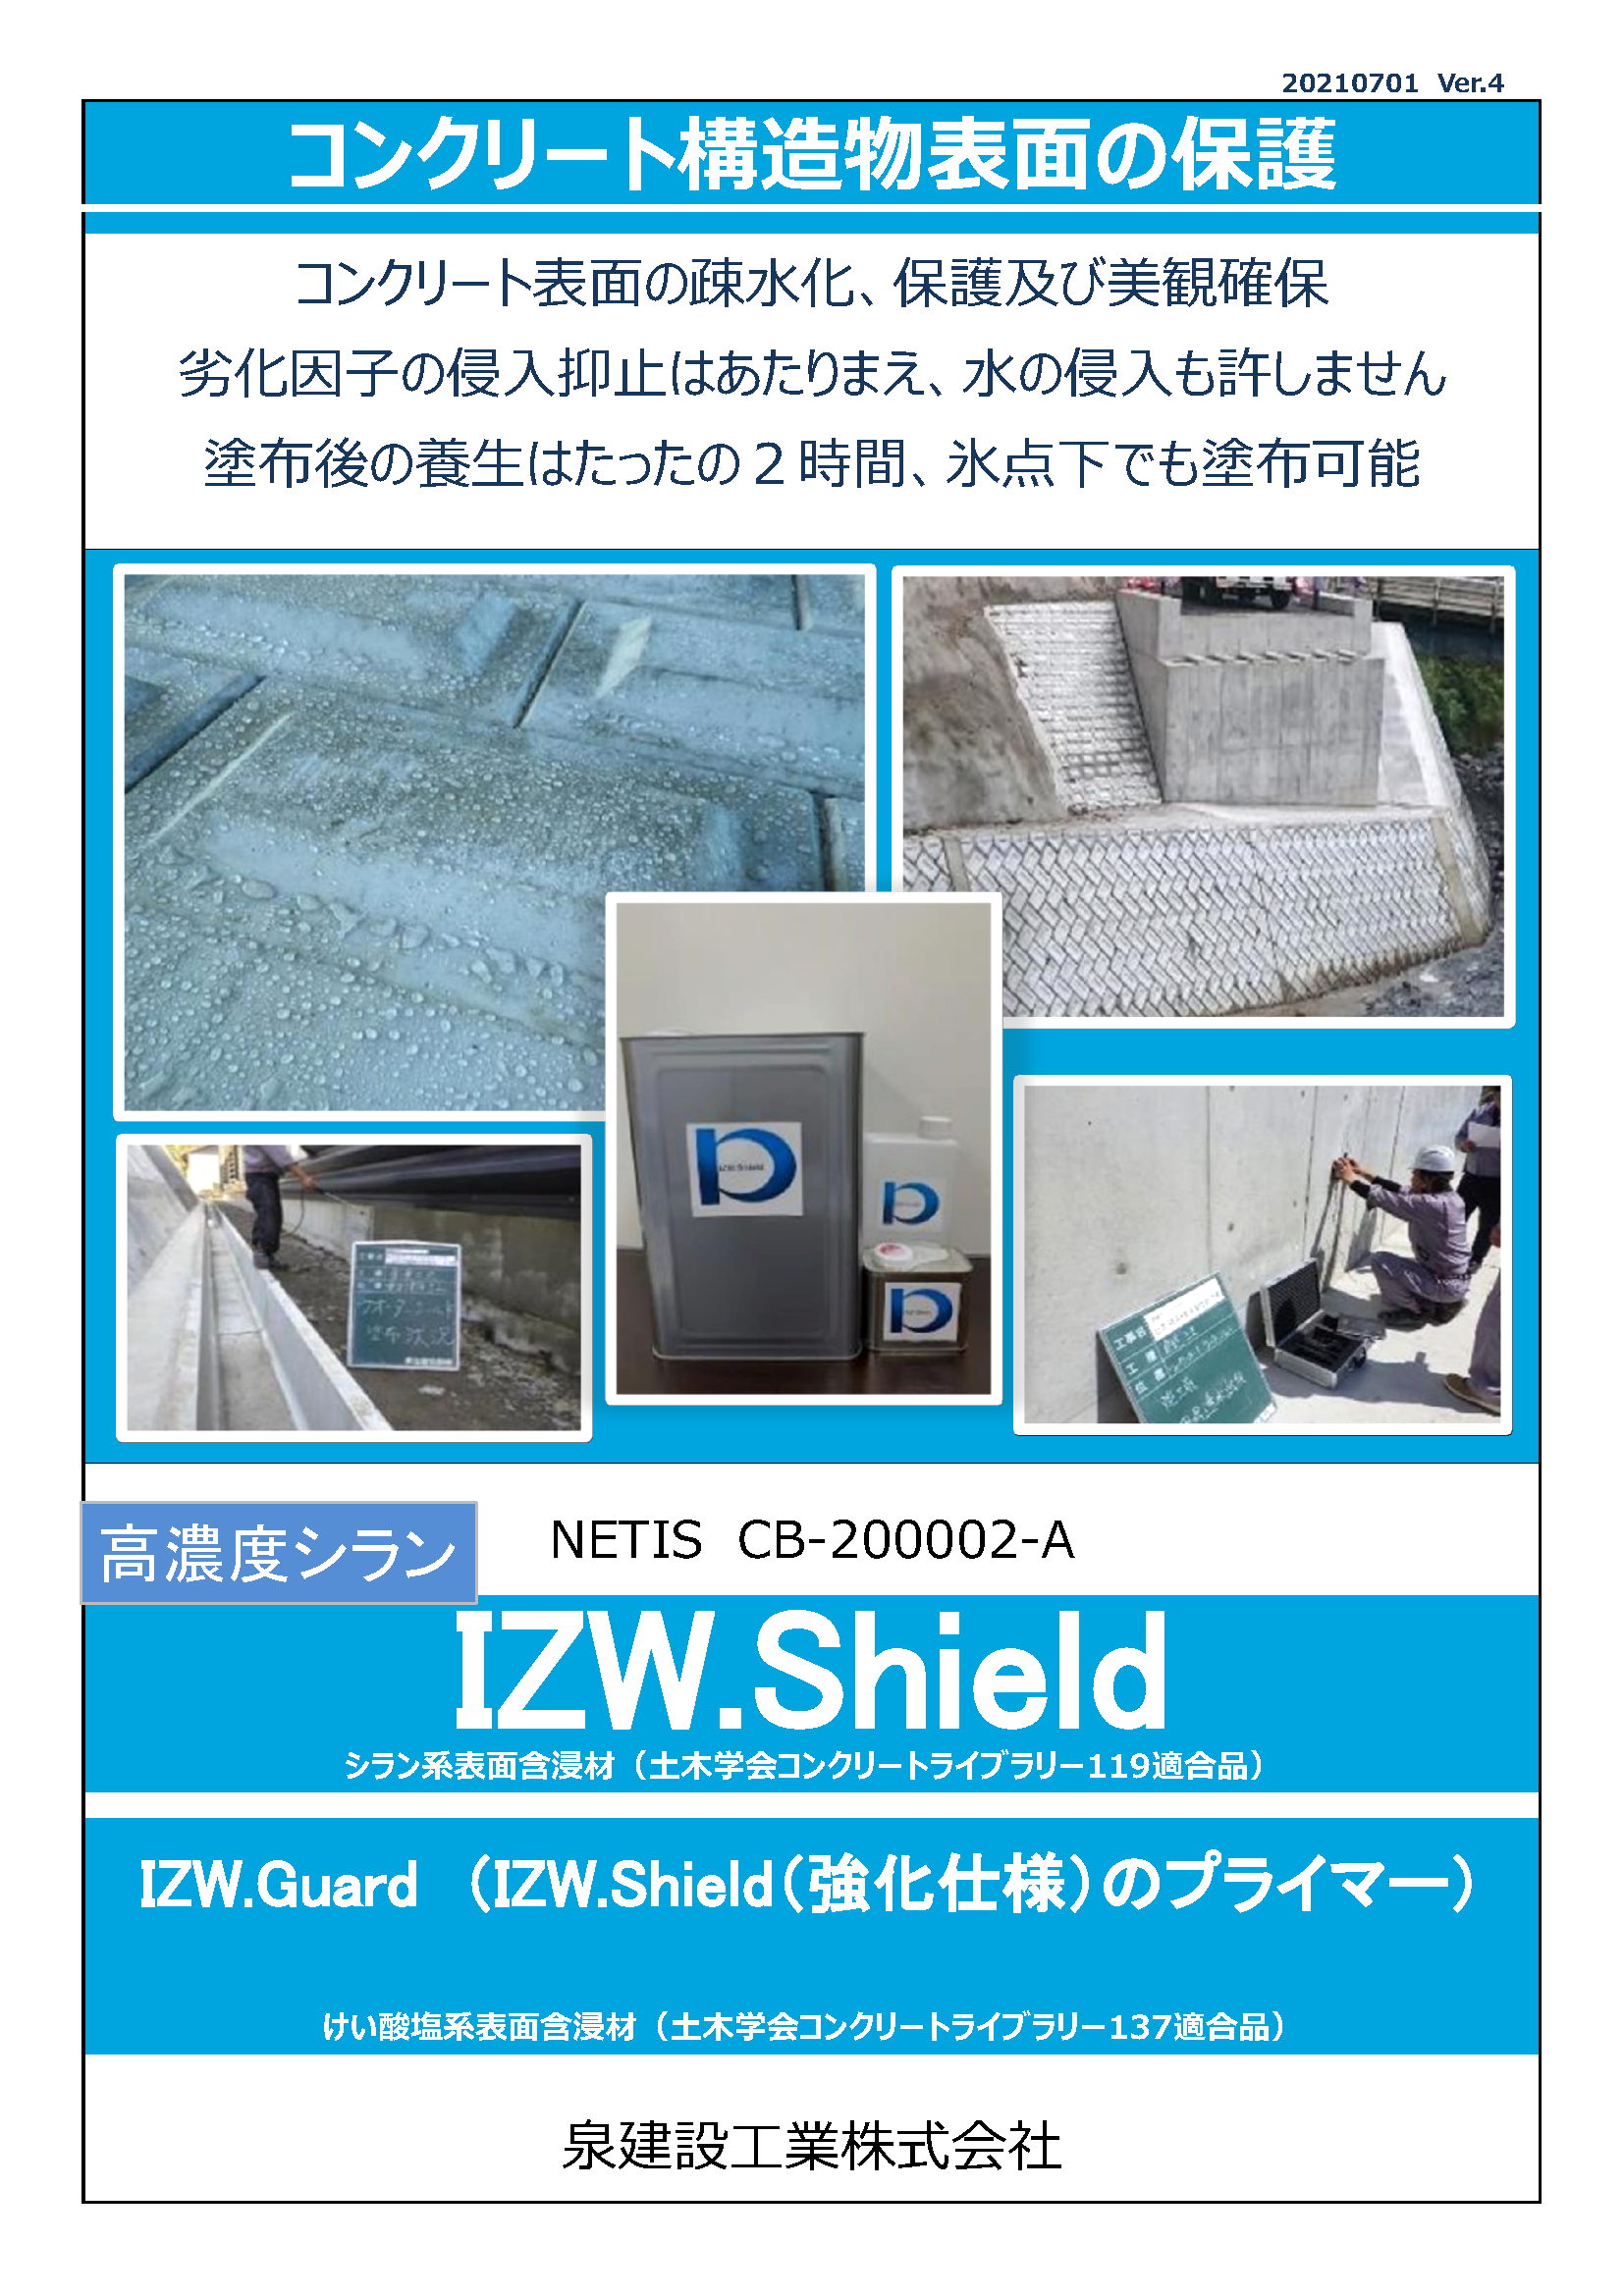 IZW.Shield